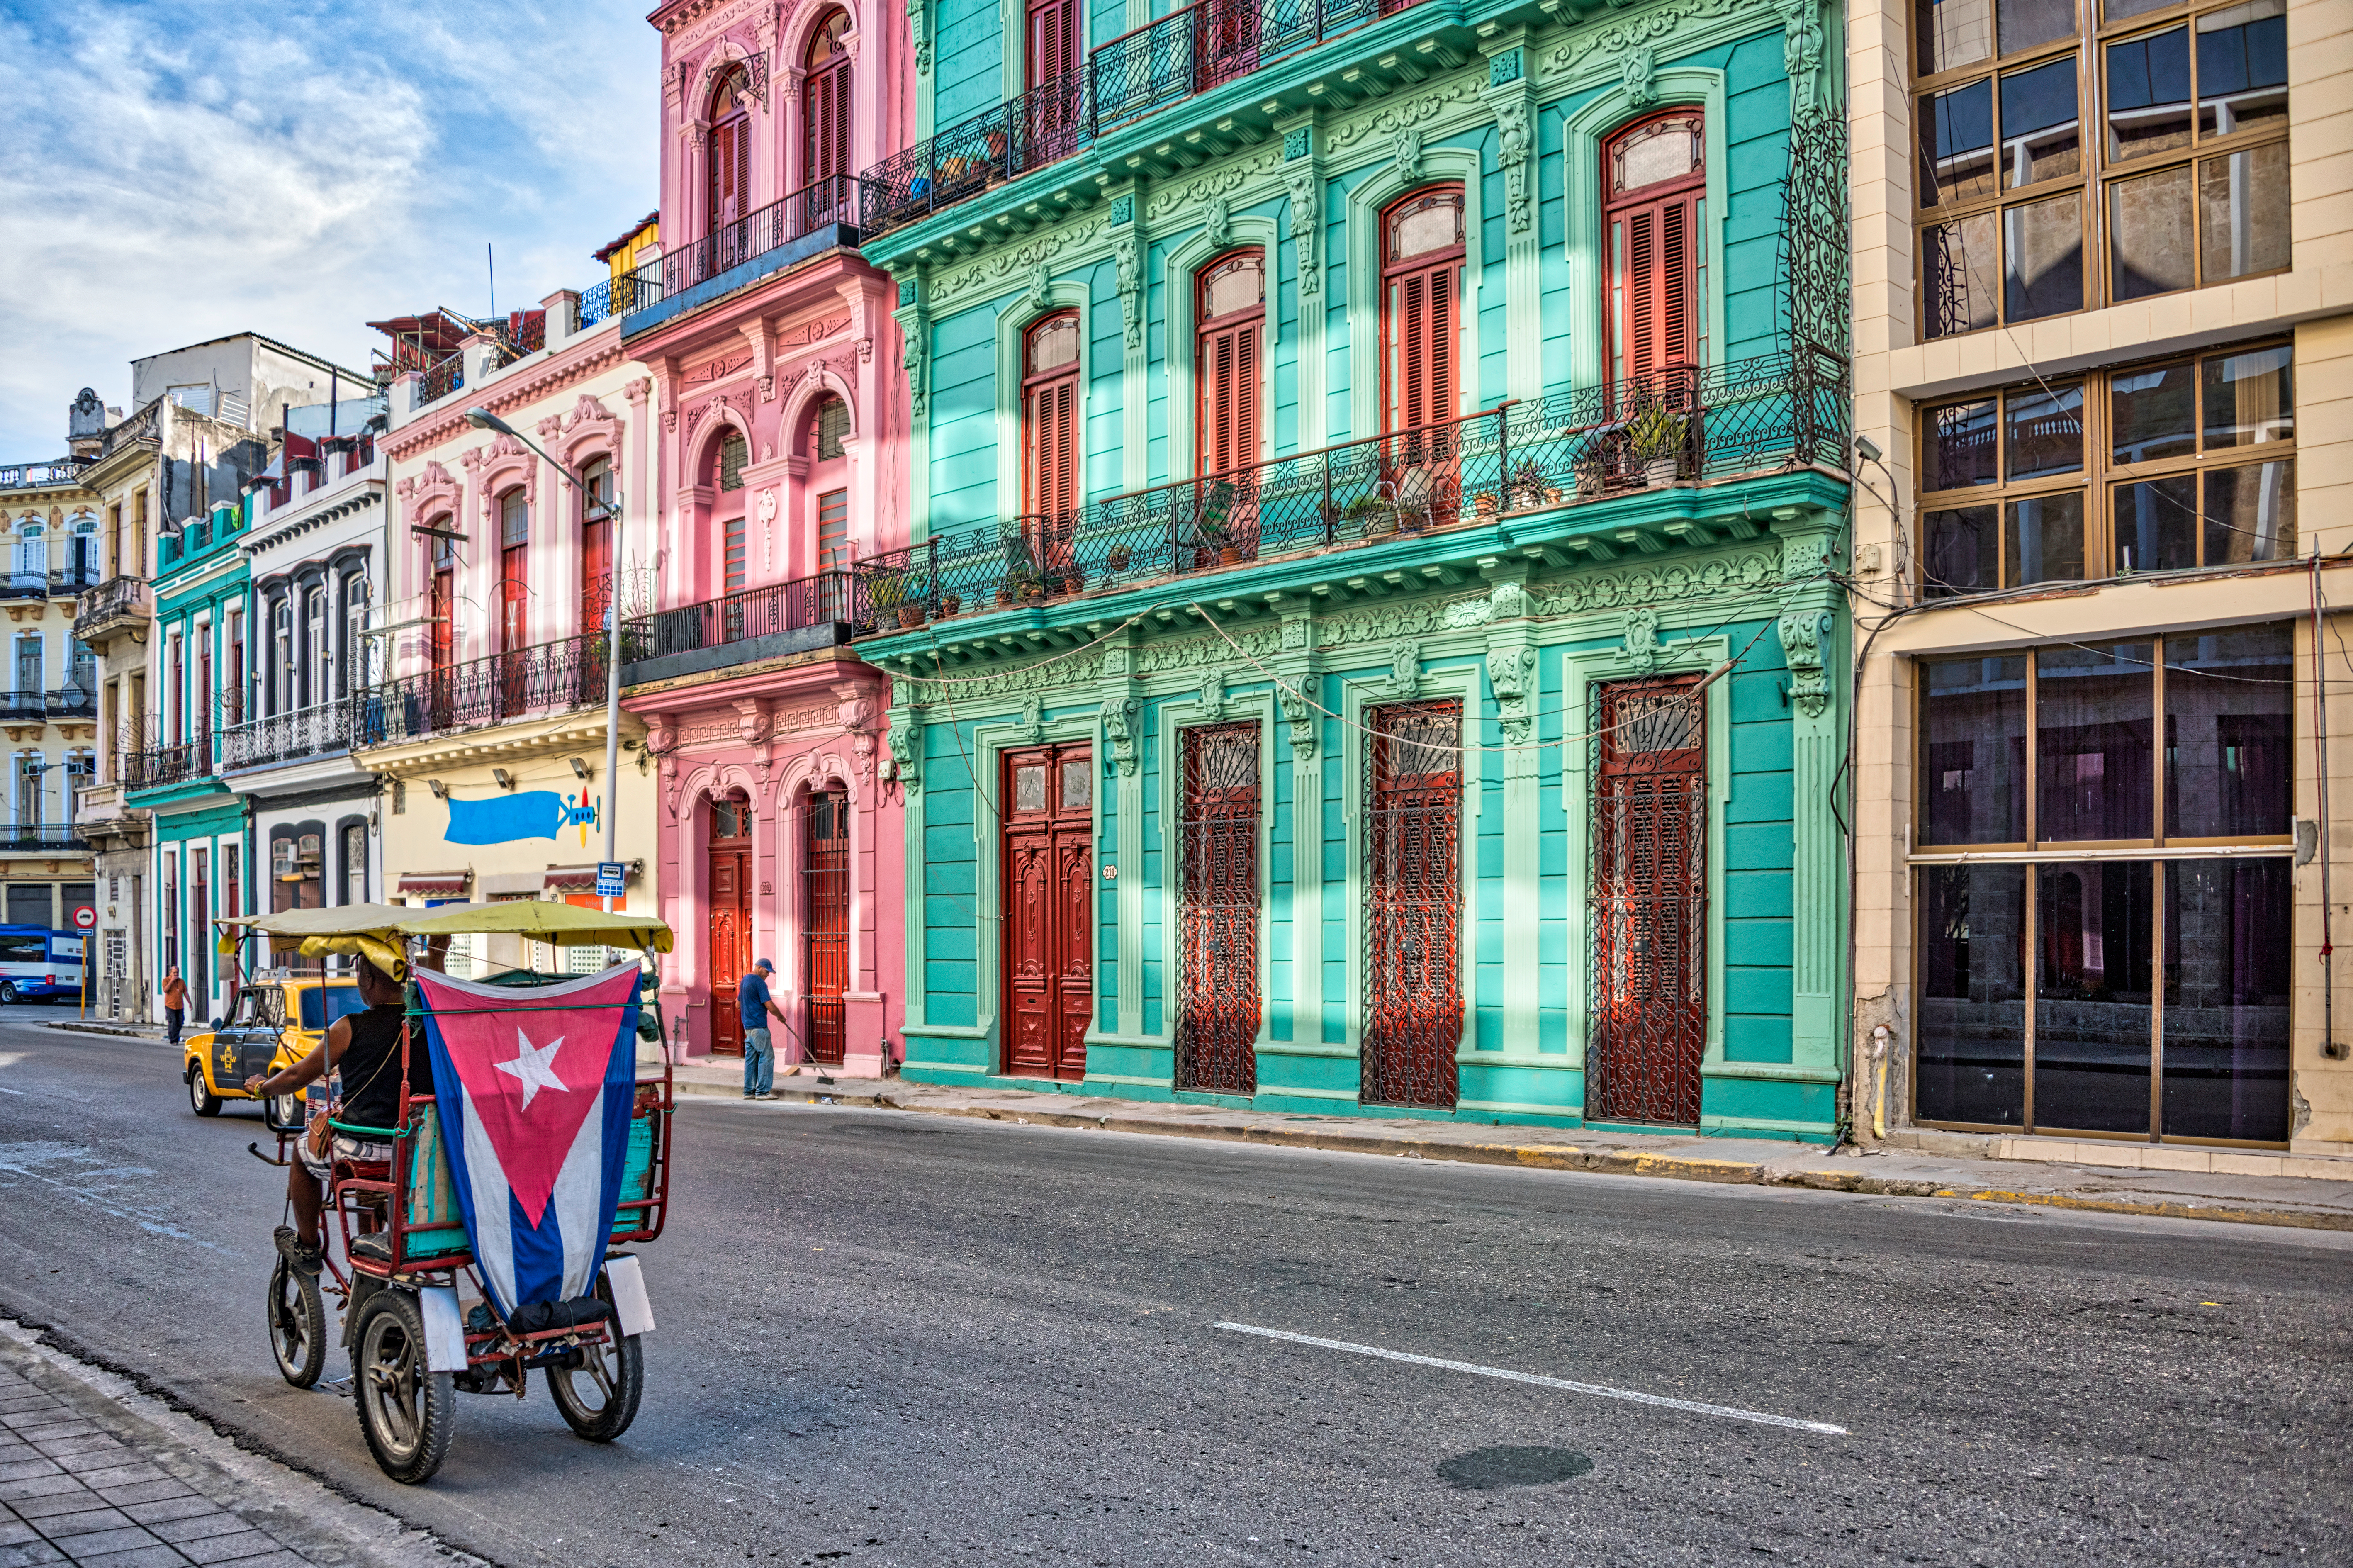     Washington lève une série de restrictions visant Cuba

